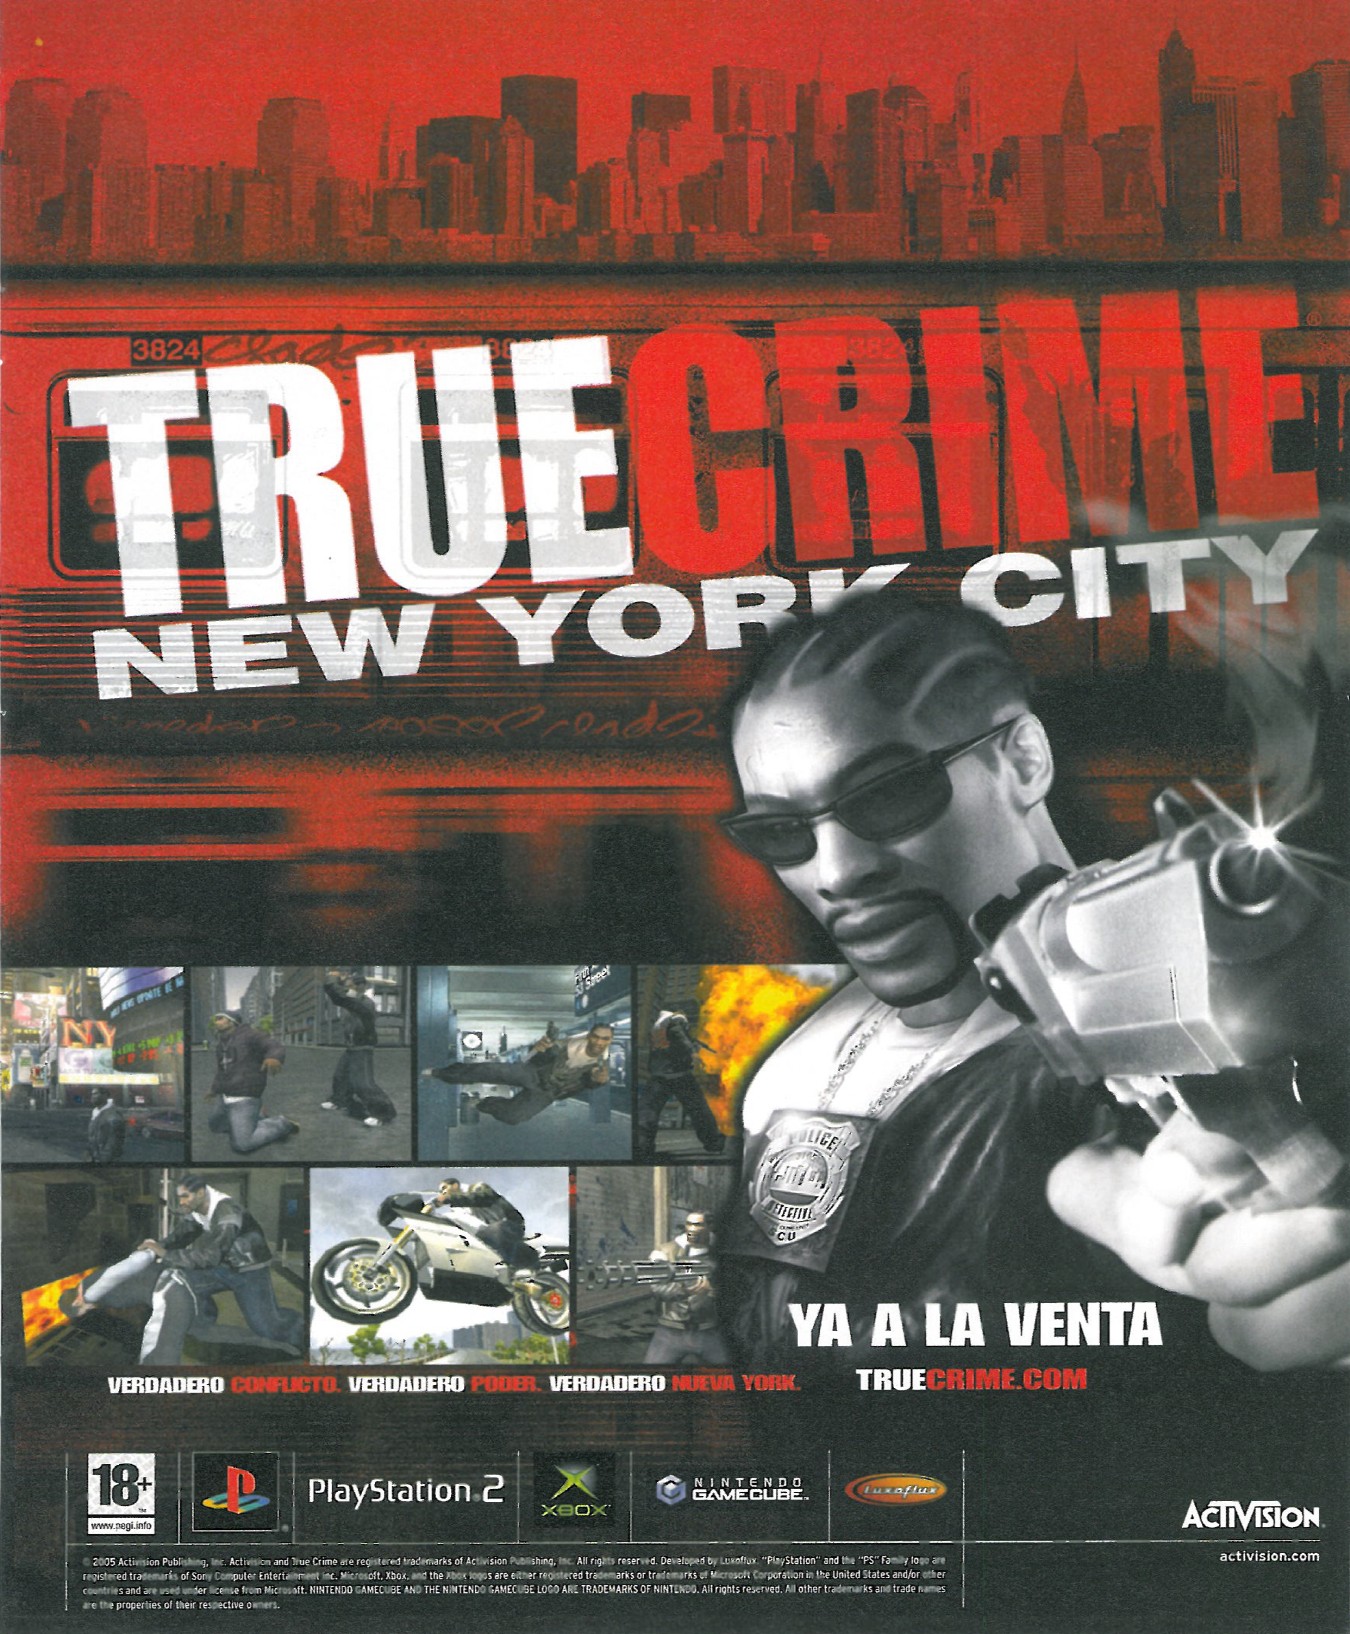 True crime new york city стим фото 63